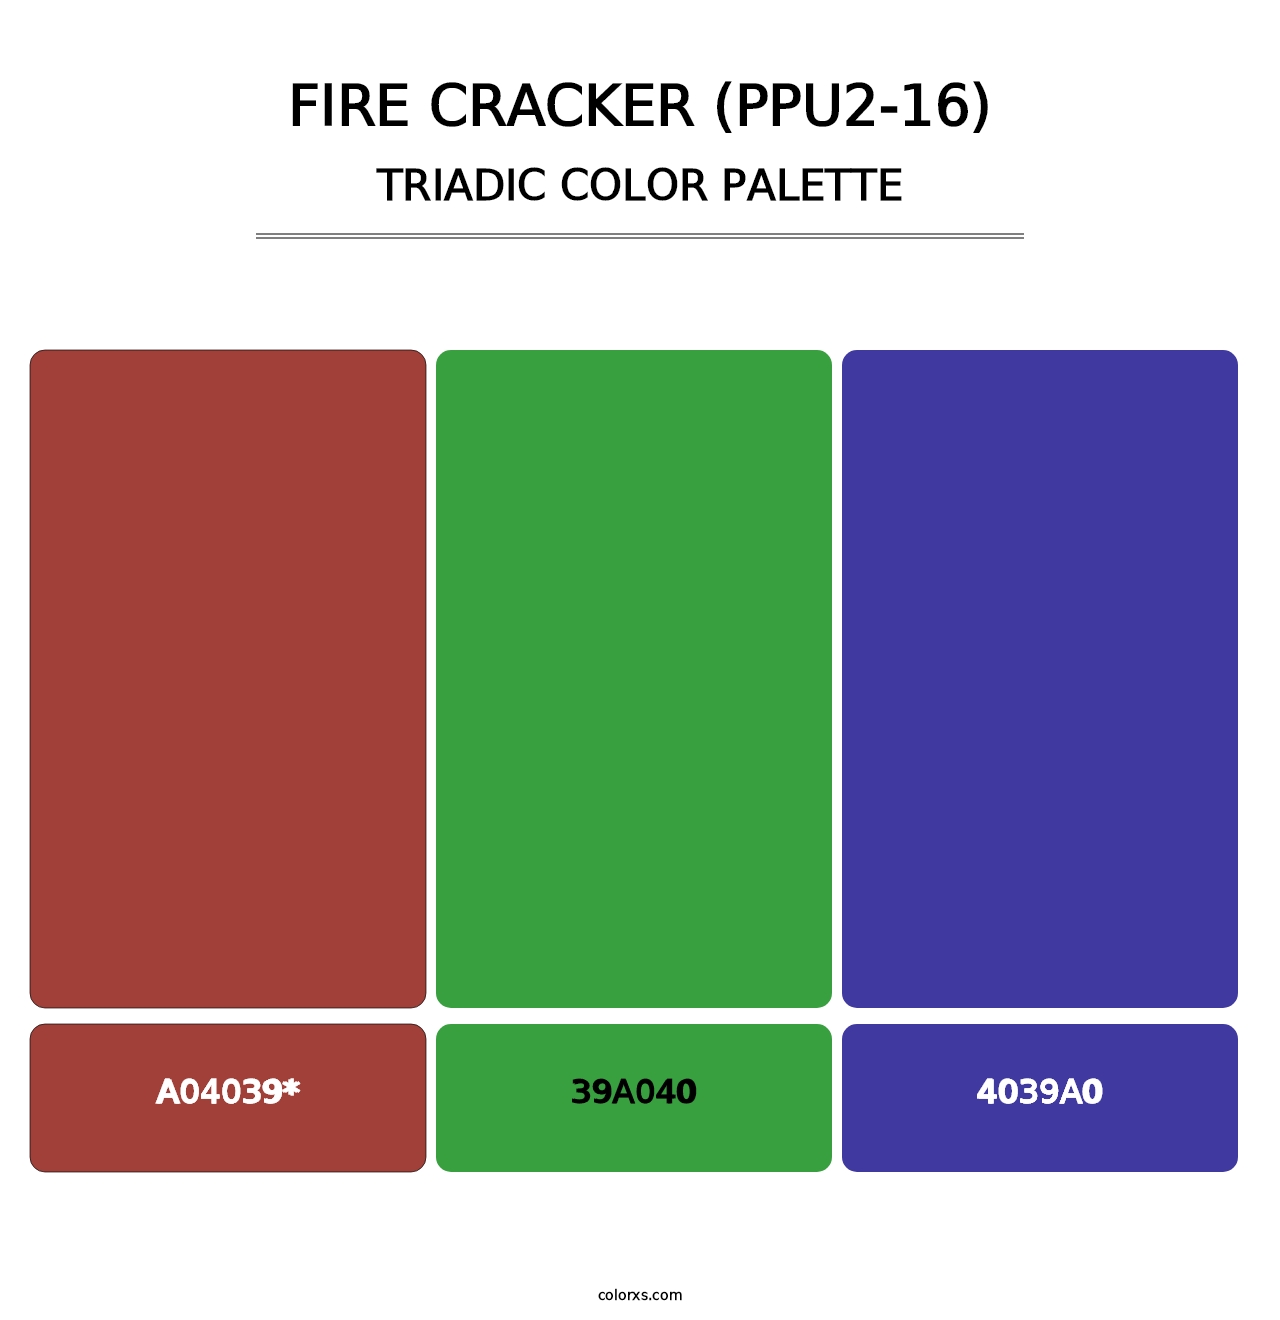 Fire Cracker (PPU2-16) - Triadic Color Palette